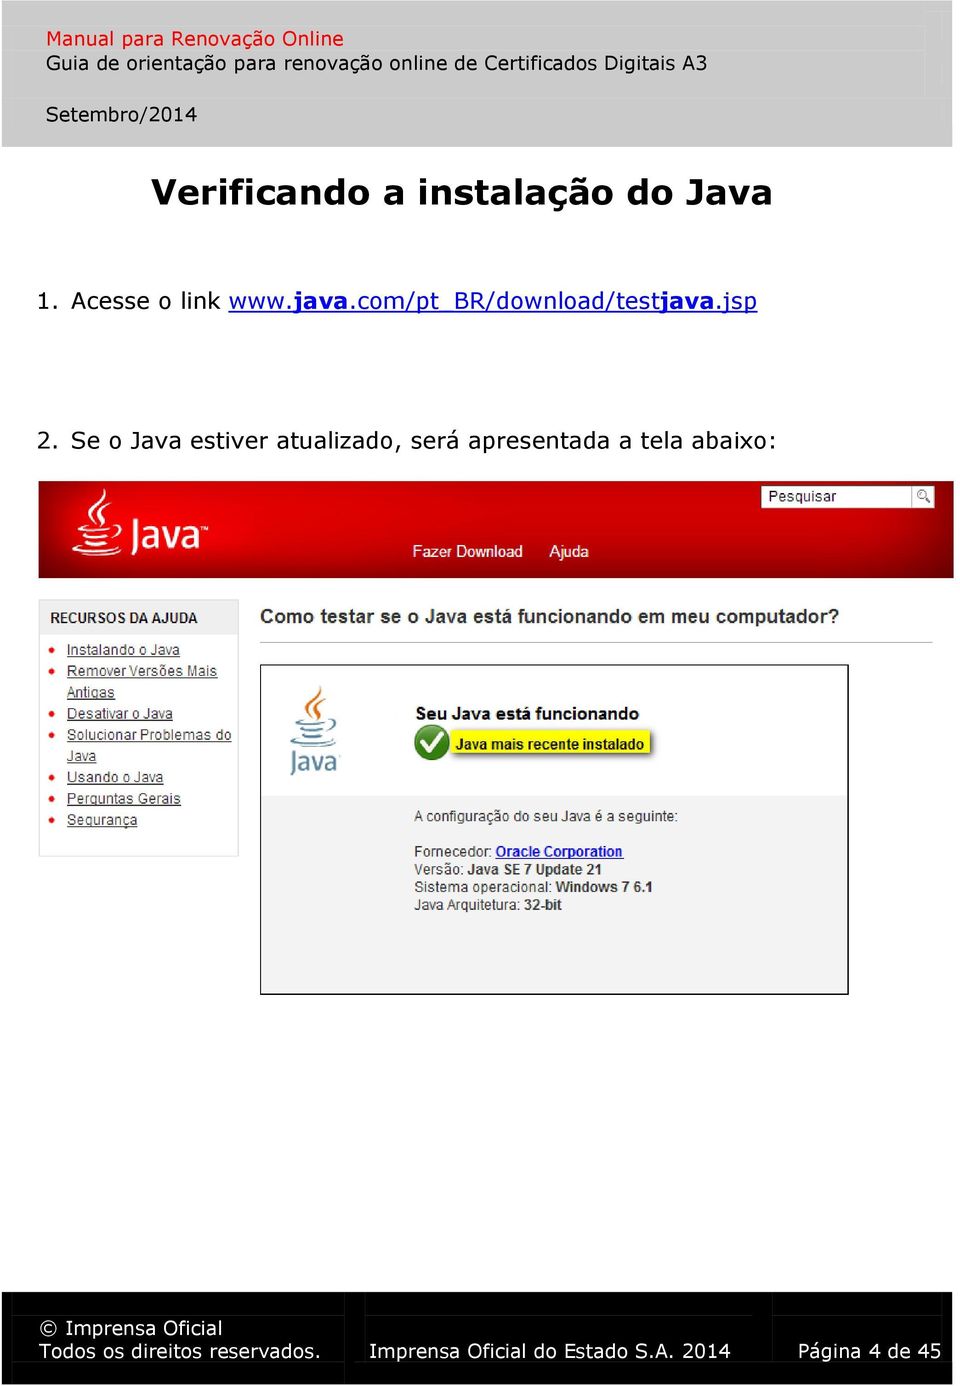 Se o Java estiver atualizado, será apresentada a tela